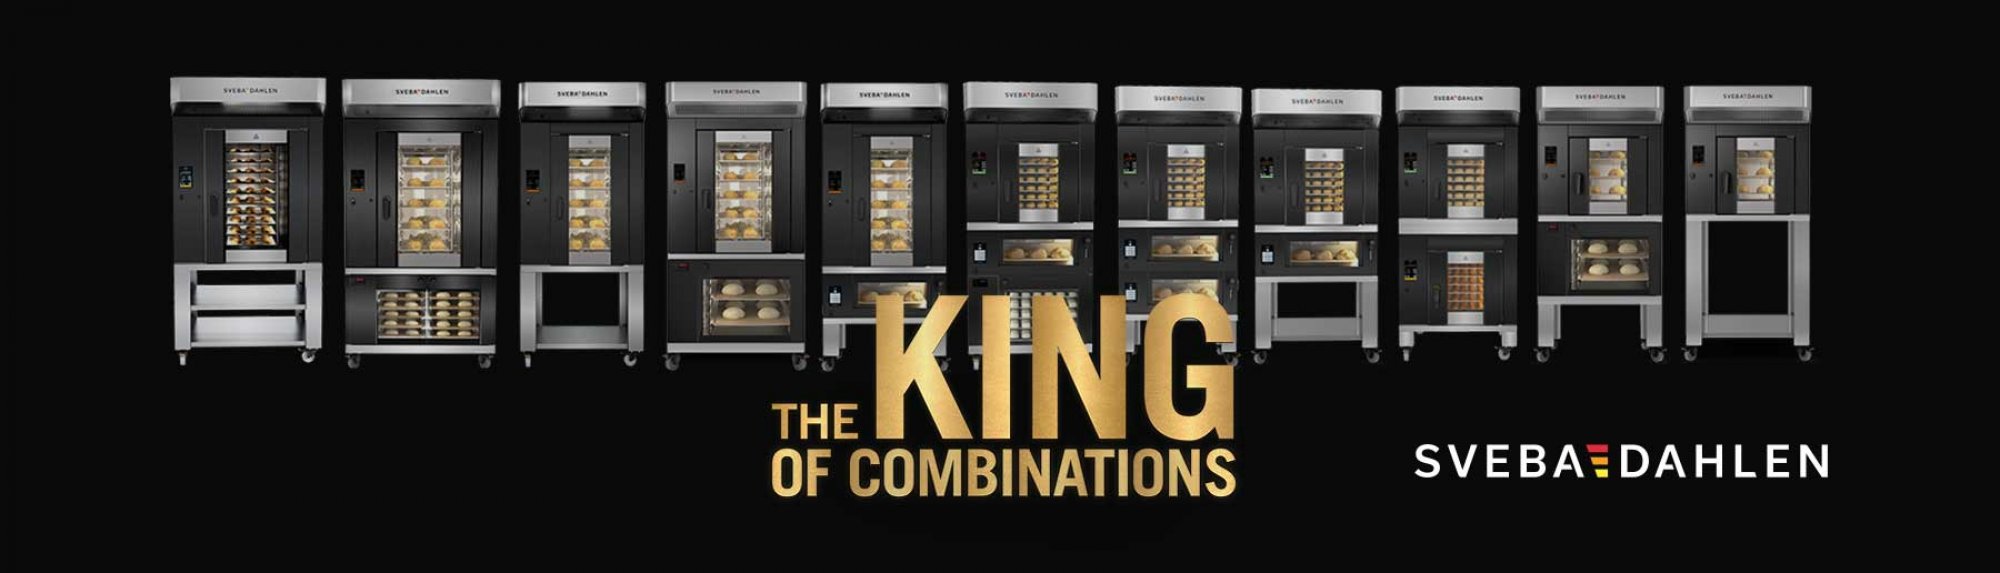 Combination oven S-Series king of combinations mini rack oven, deck oven, proofer Sveba dahlen